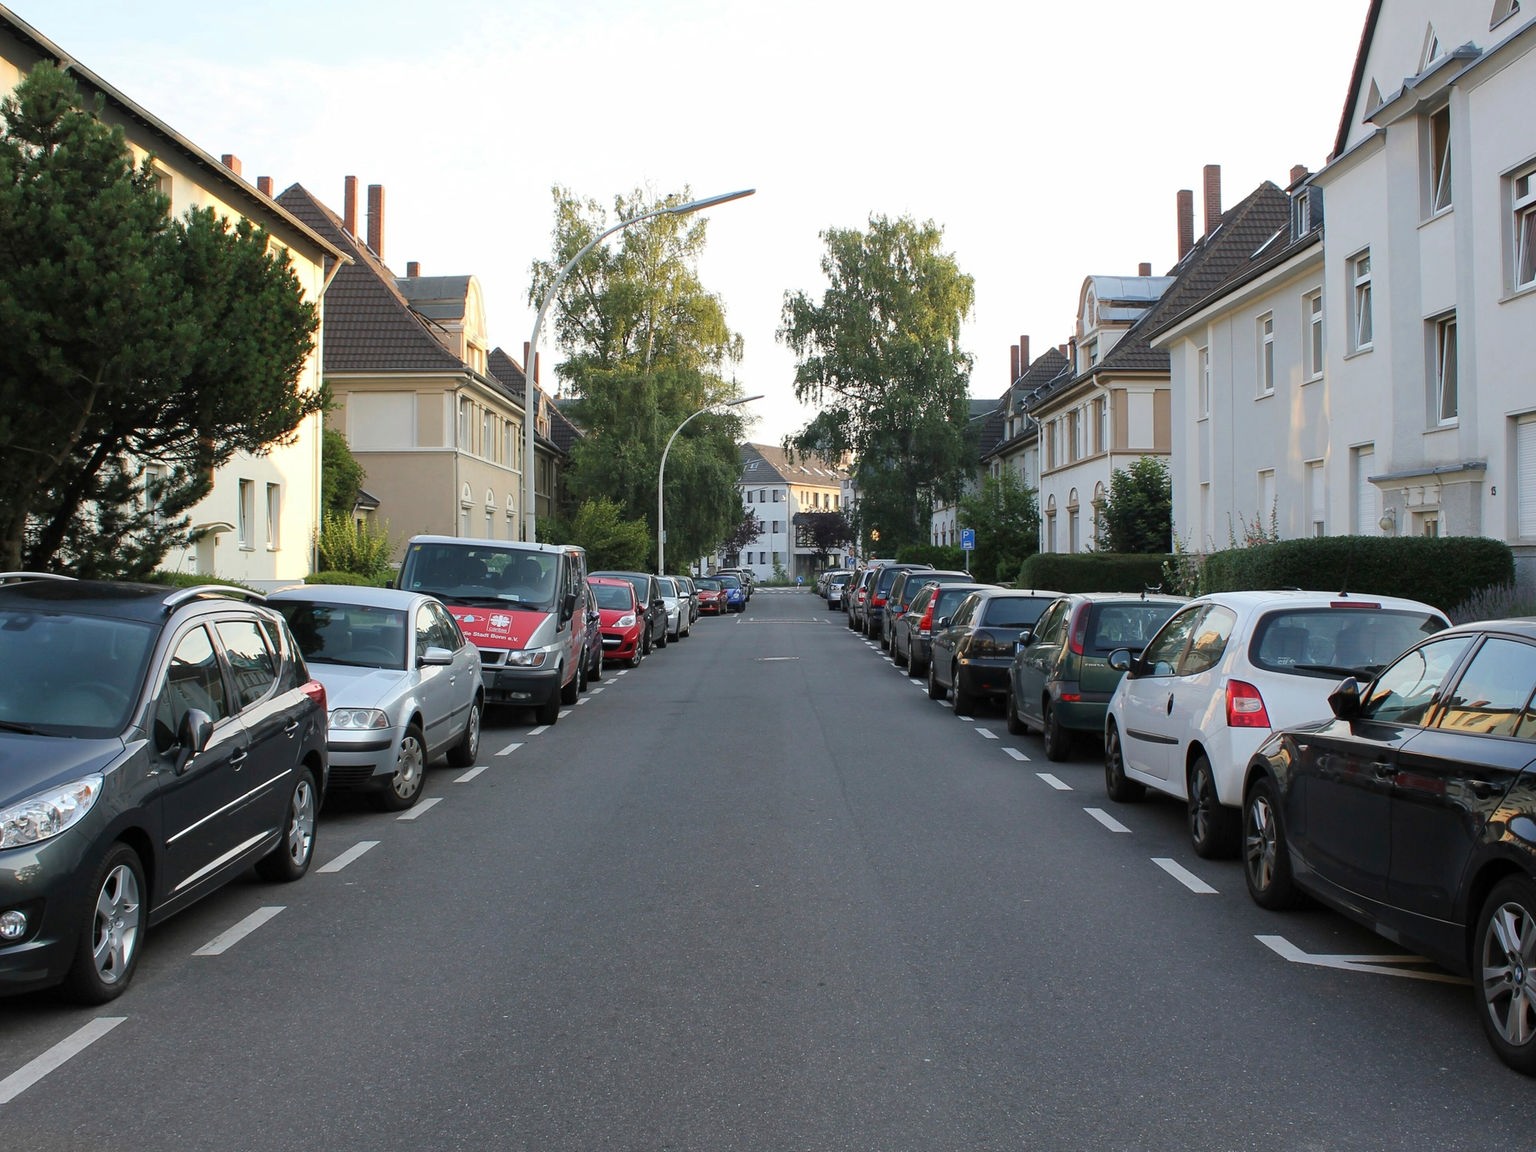 Siegen bietet Bewohnerparkausweis zum Selbst-Ausdrucken 